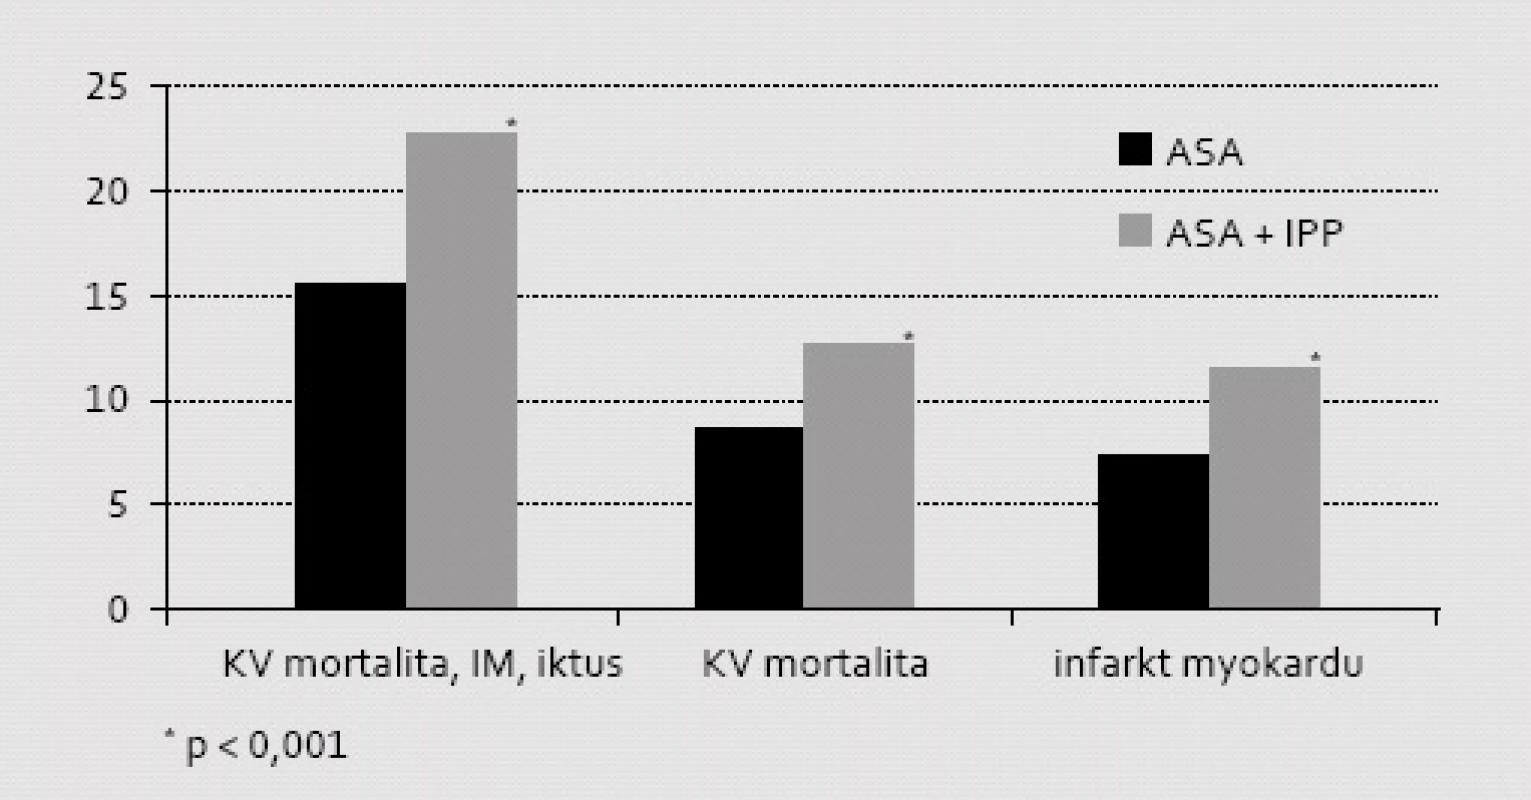 Význam komedikace ASA s IPP na mortalitně/morbiditní ukazatele při retrospektivní analýze registru nemocných po IM z Dánského národního registru během prvých 12 měsíců po příhodě. Je patrná významně vyšší incidence sledovaných aterotrombotických příhod typu MACE ve skupině léčené současně IPP. Analyzována byla pouze podskupina nemocných neléčená klopidogrelem ani jinými inhibitory ADP receptorů.